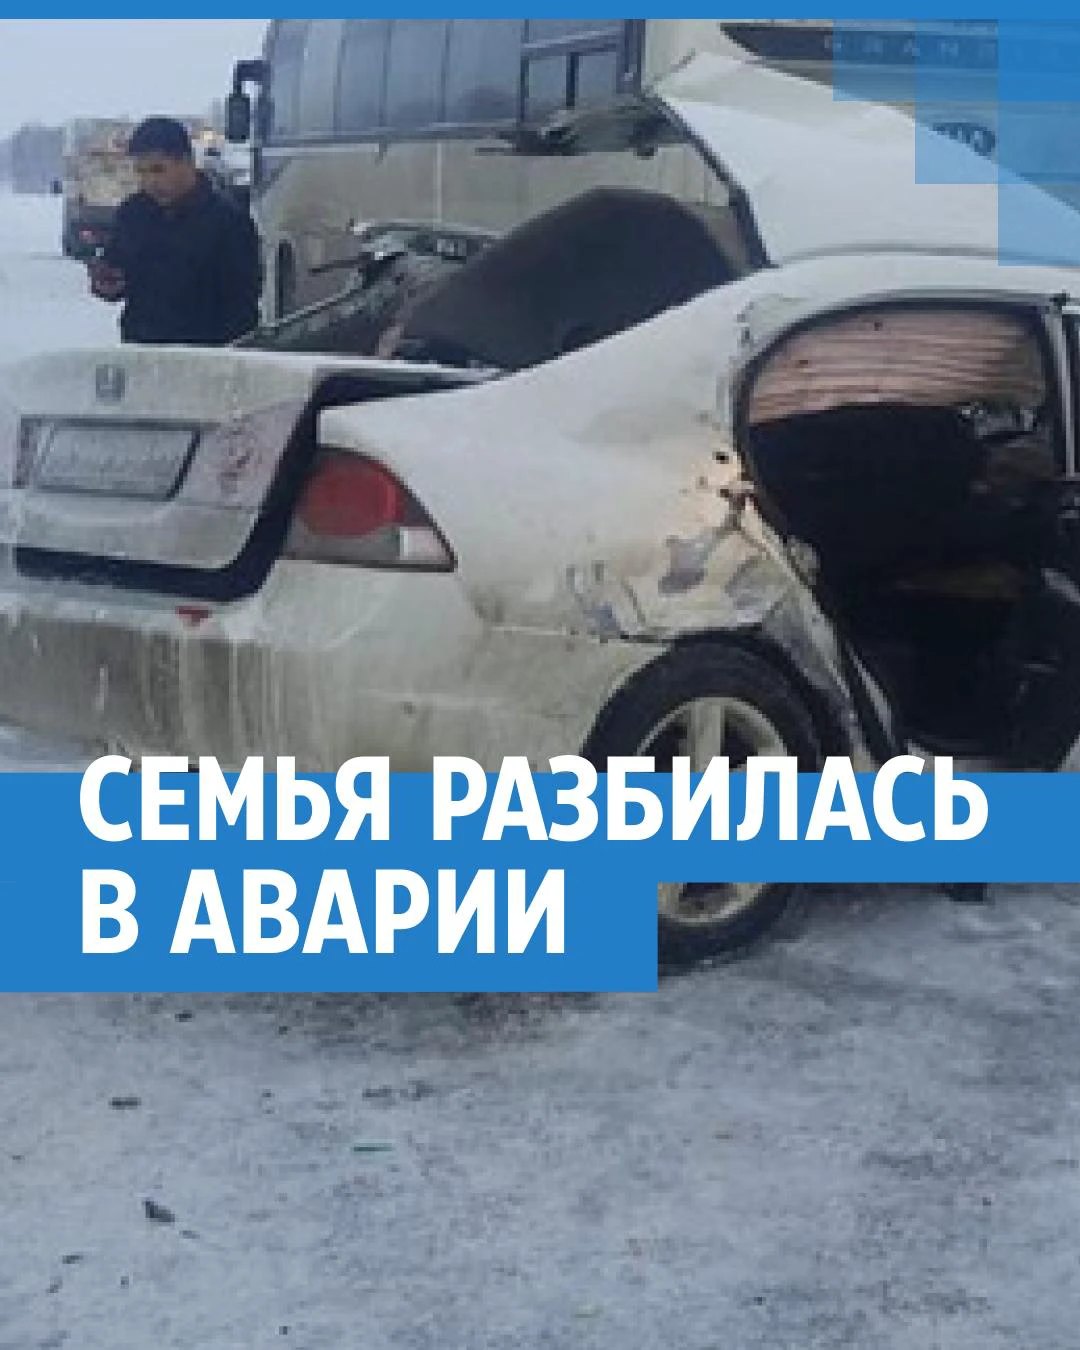 Полицейский автомобиль попал в ДТП в Кишиневе: есть серьезные повреждения